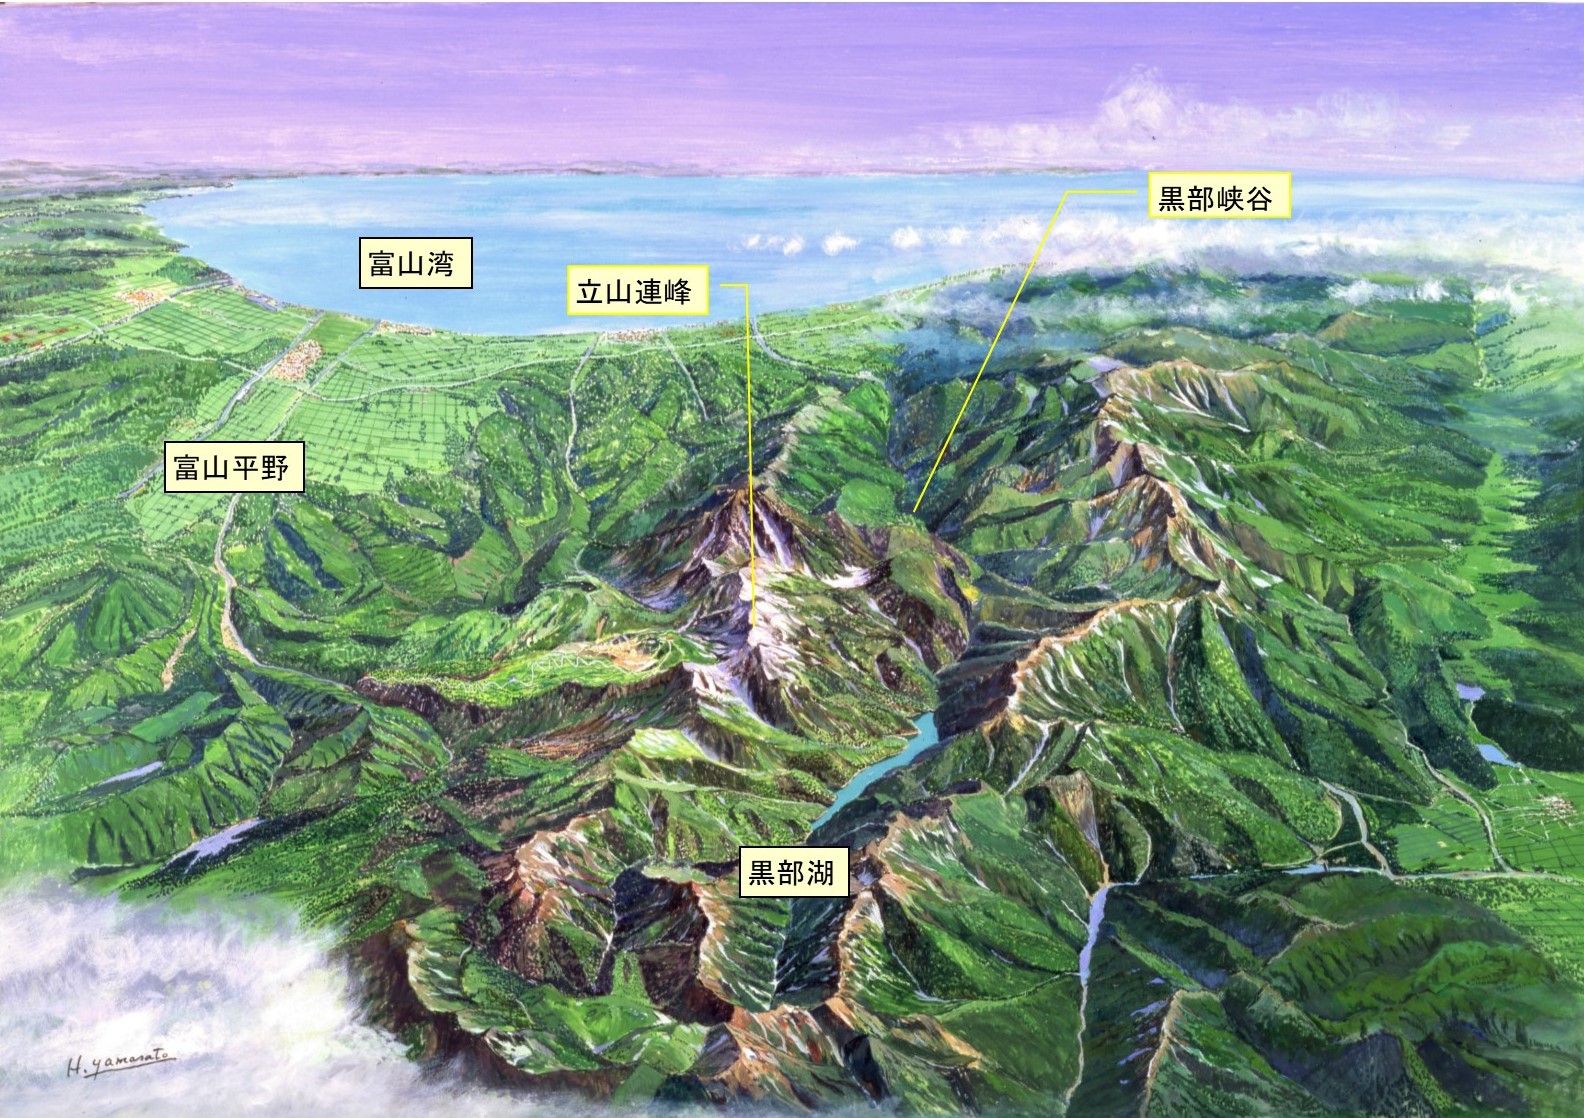 今年の冬は 絶景パノラマ望む立山黒部に抱かれた富山へ 立山黒部観光宣伝協議会のプレスリリース